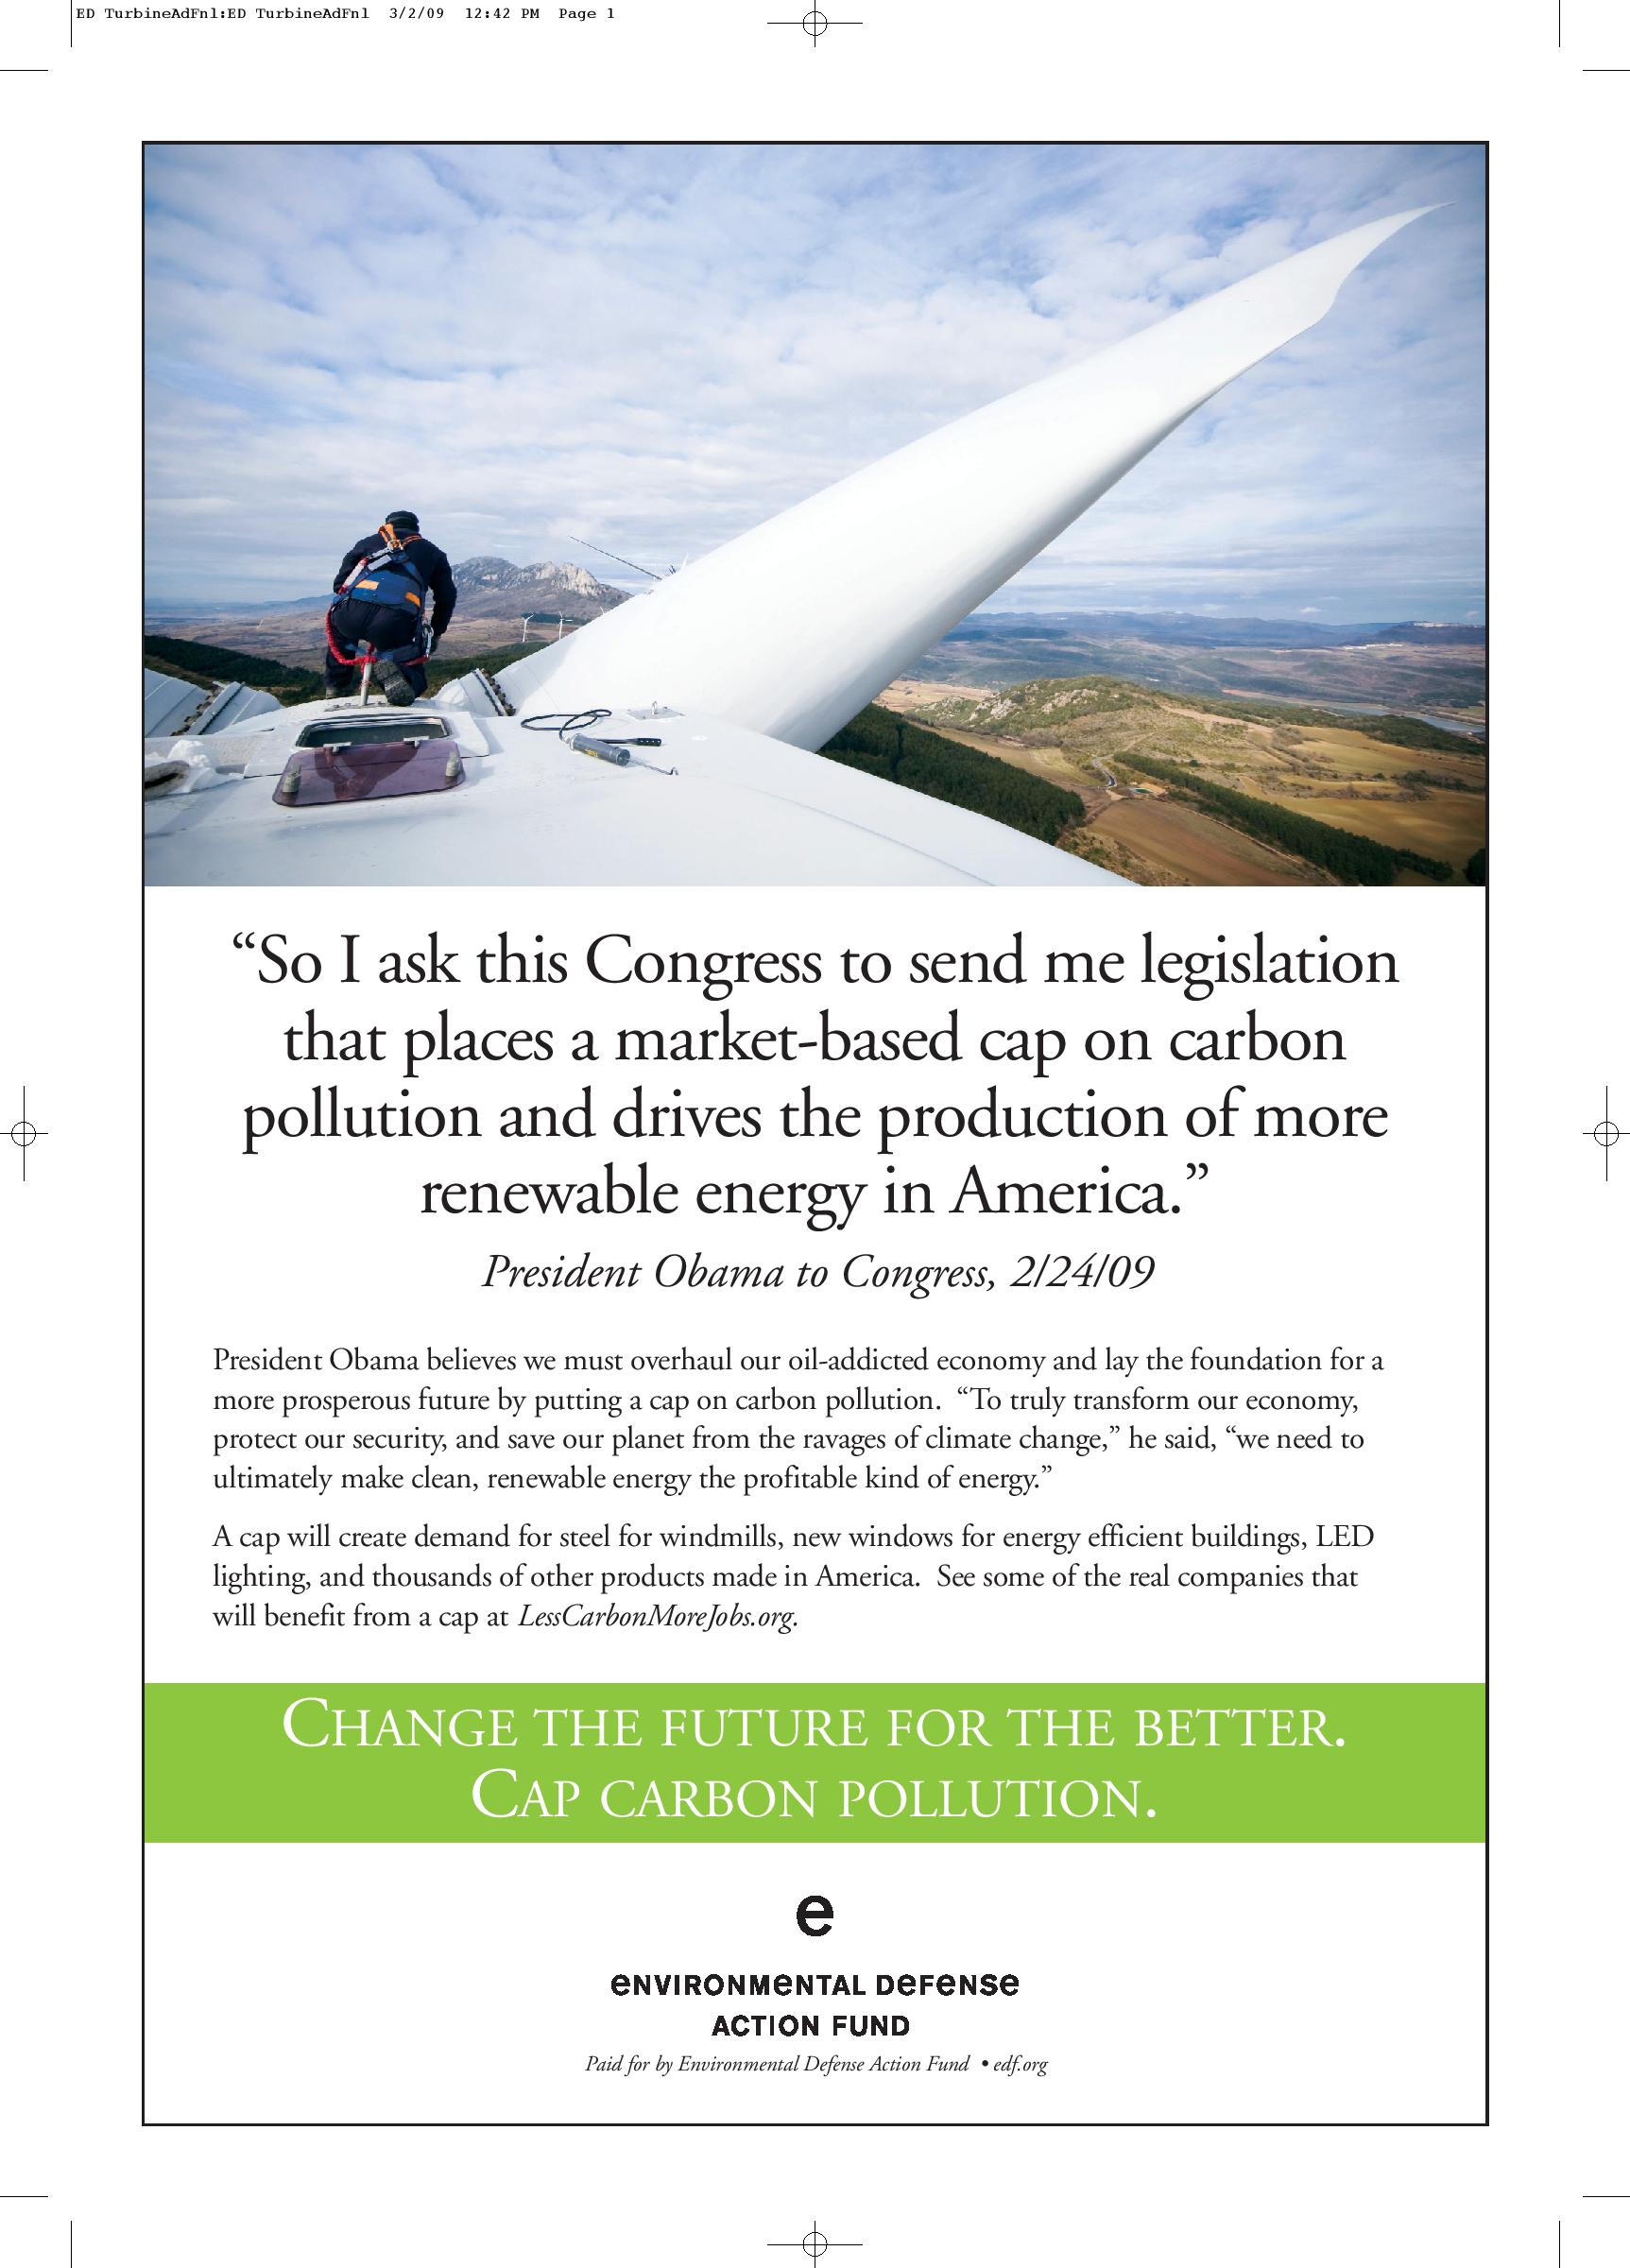 Send me legislation that places a cap on carbon